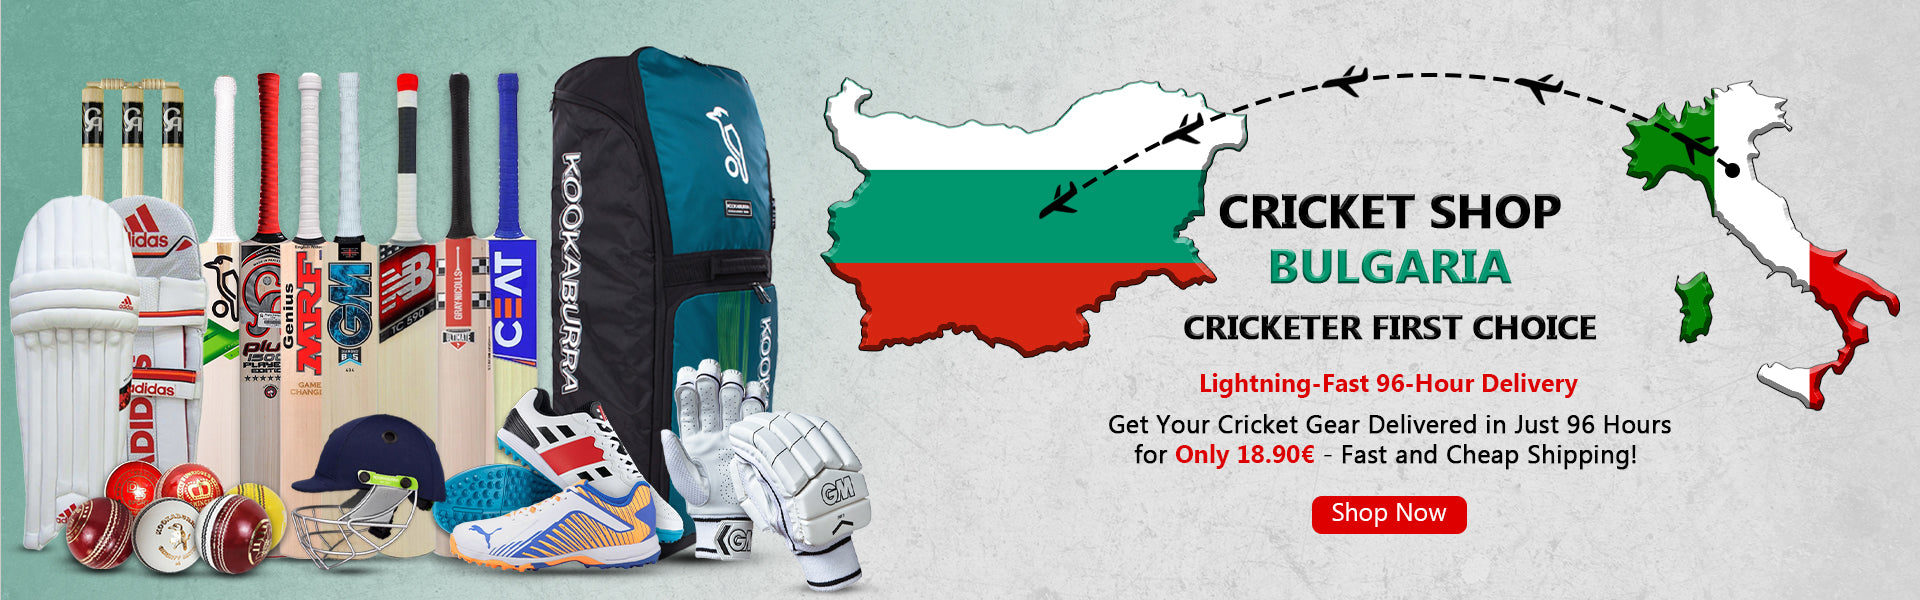 Cricket Shop Bulgaria | Cricketer first Choice